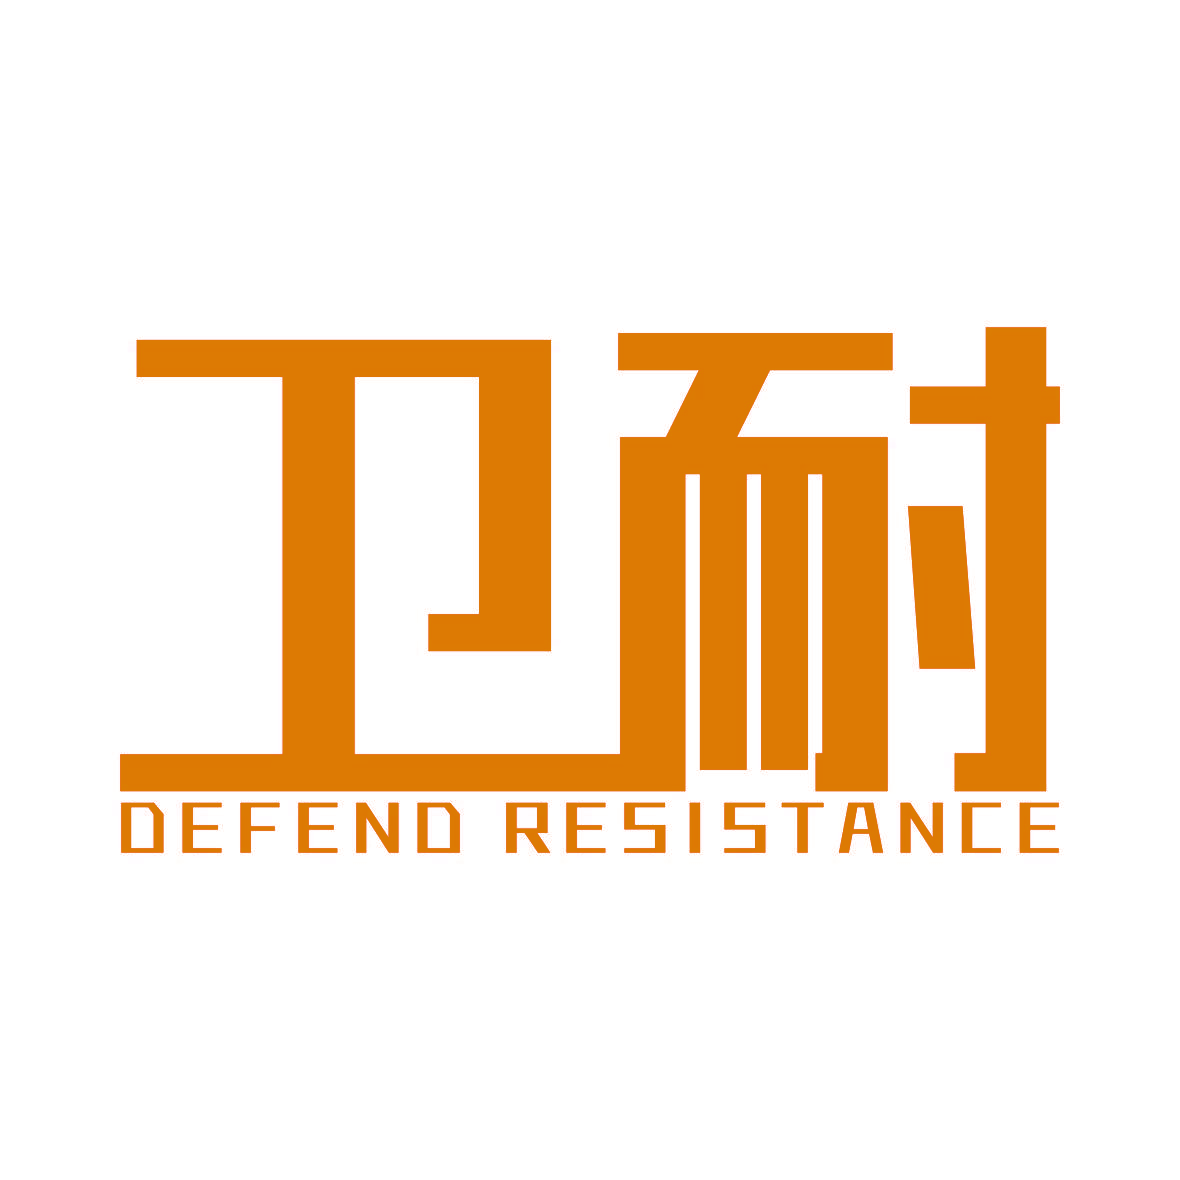 卫耐 DEFEND RESISTANCE